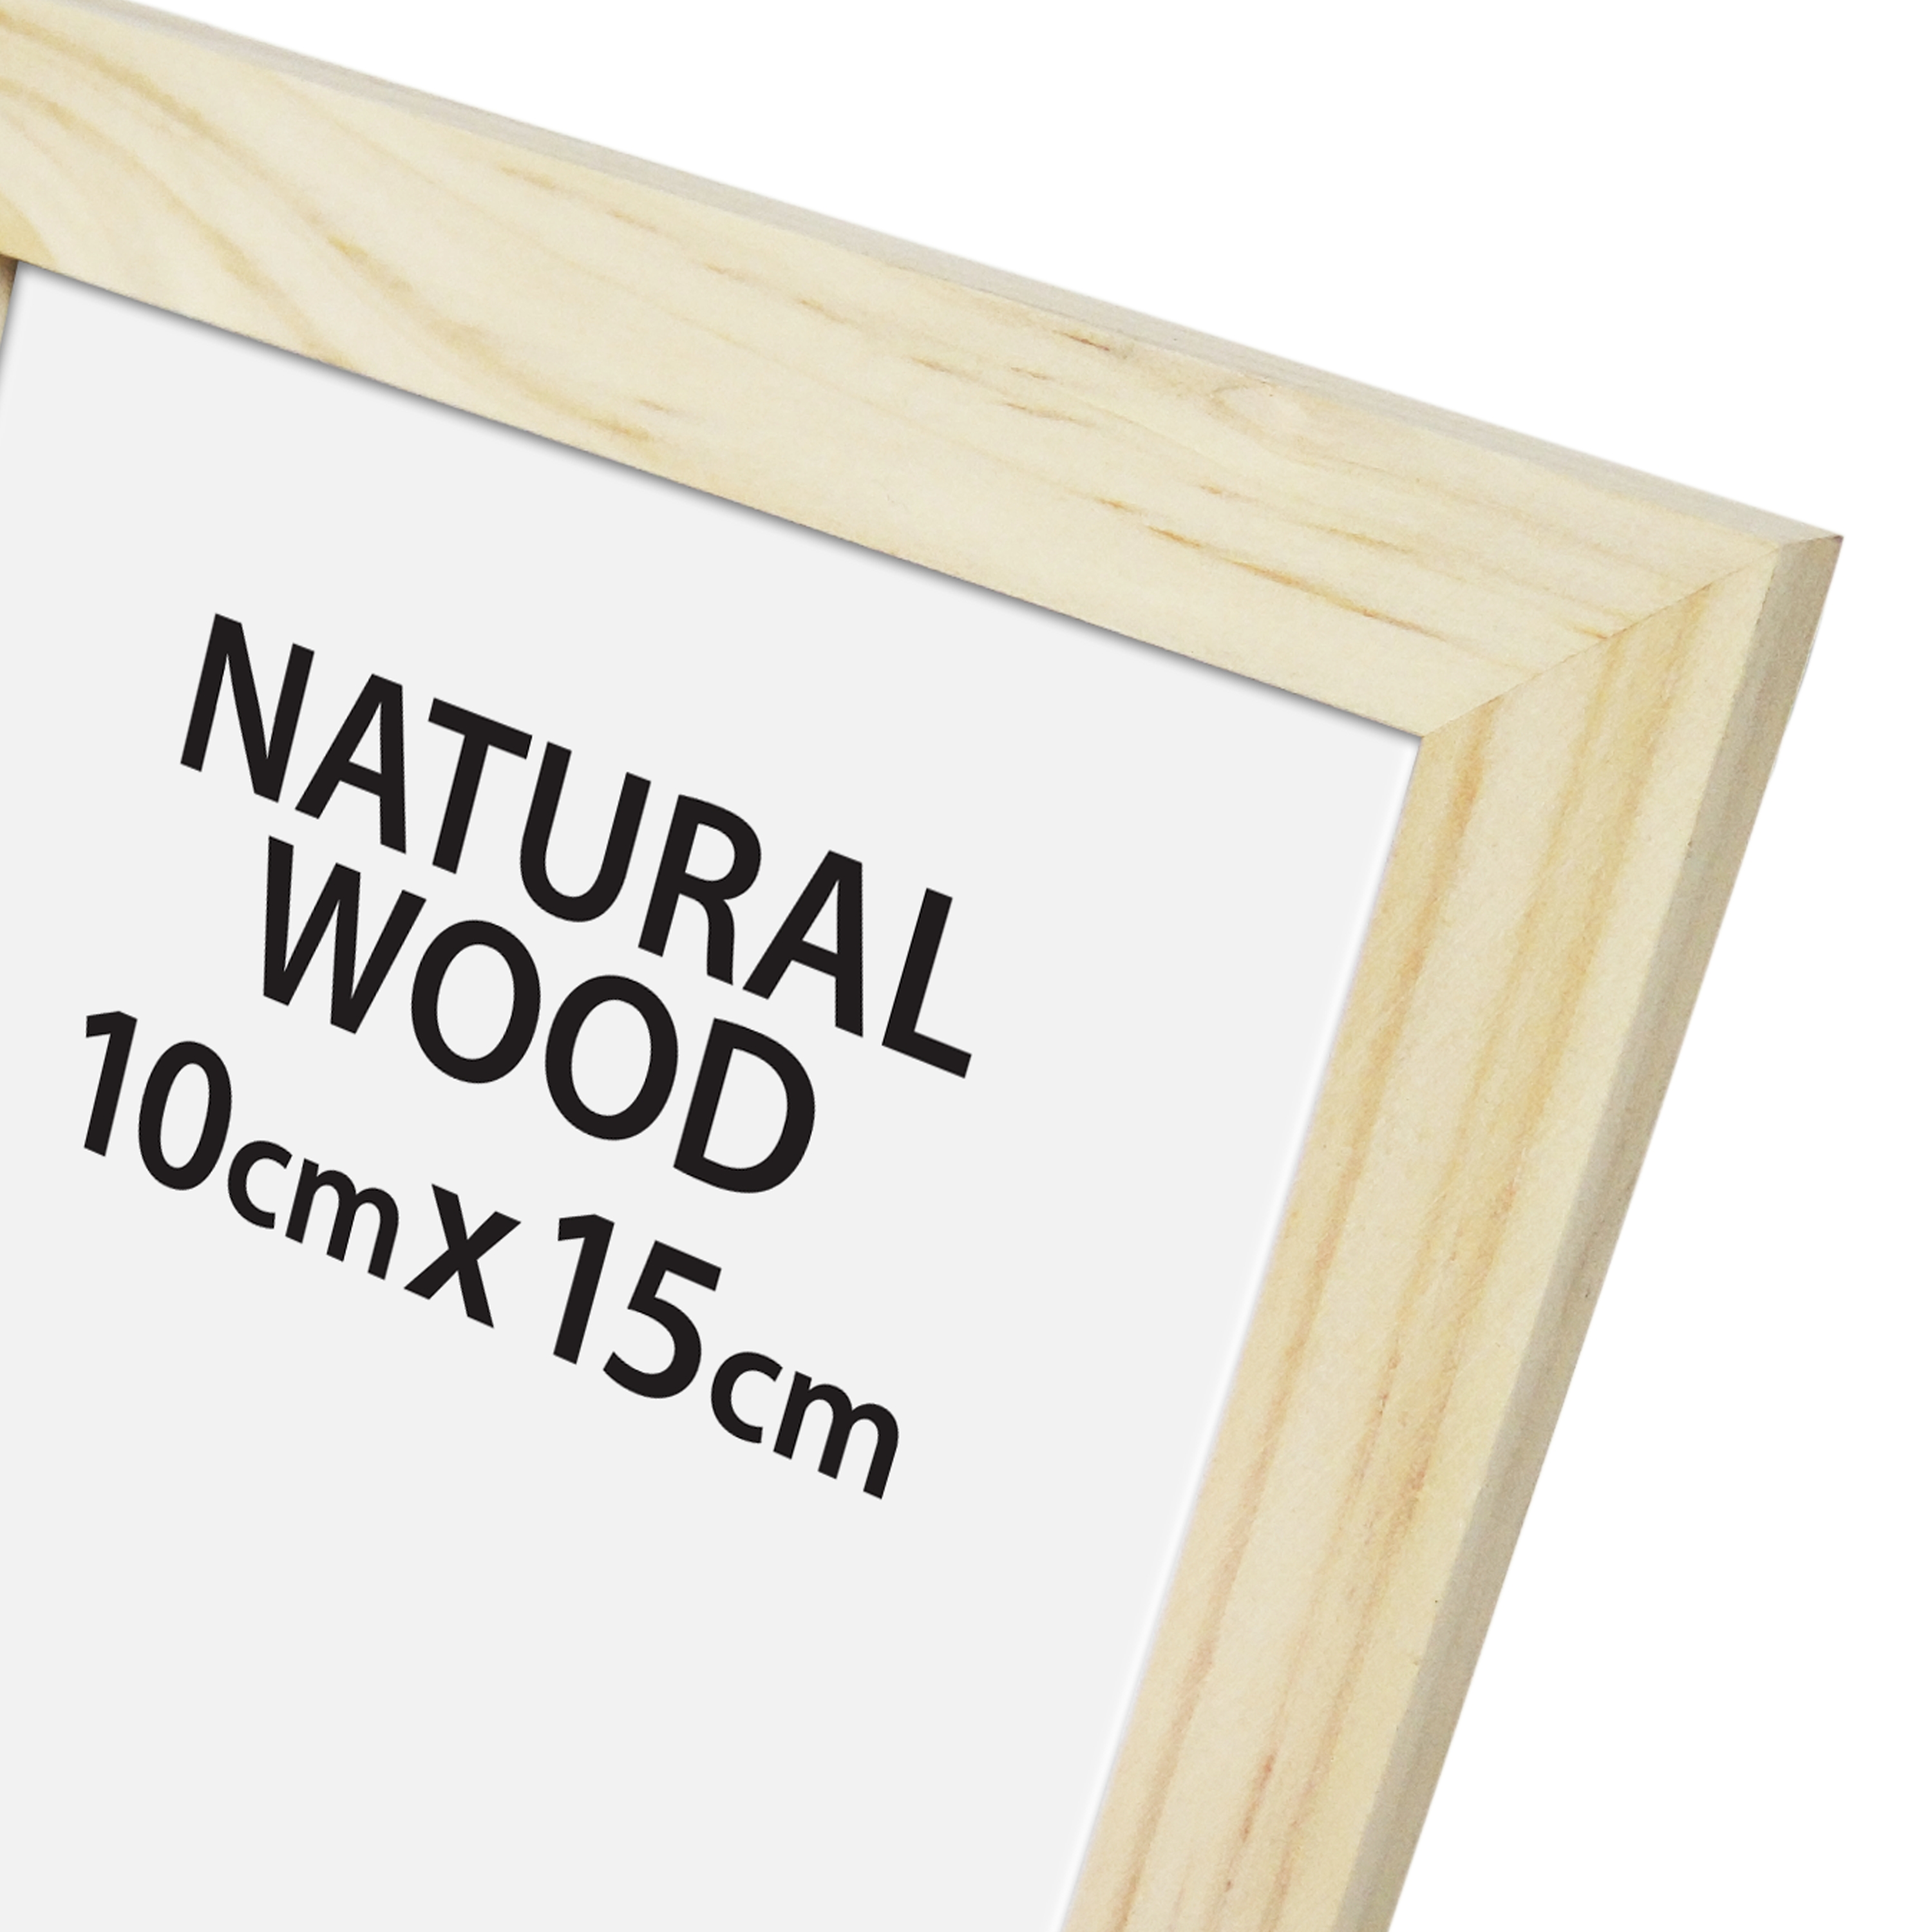 Cornice Natural wood naturale per foto da 10x15 cm - 9